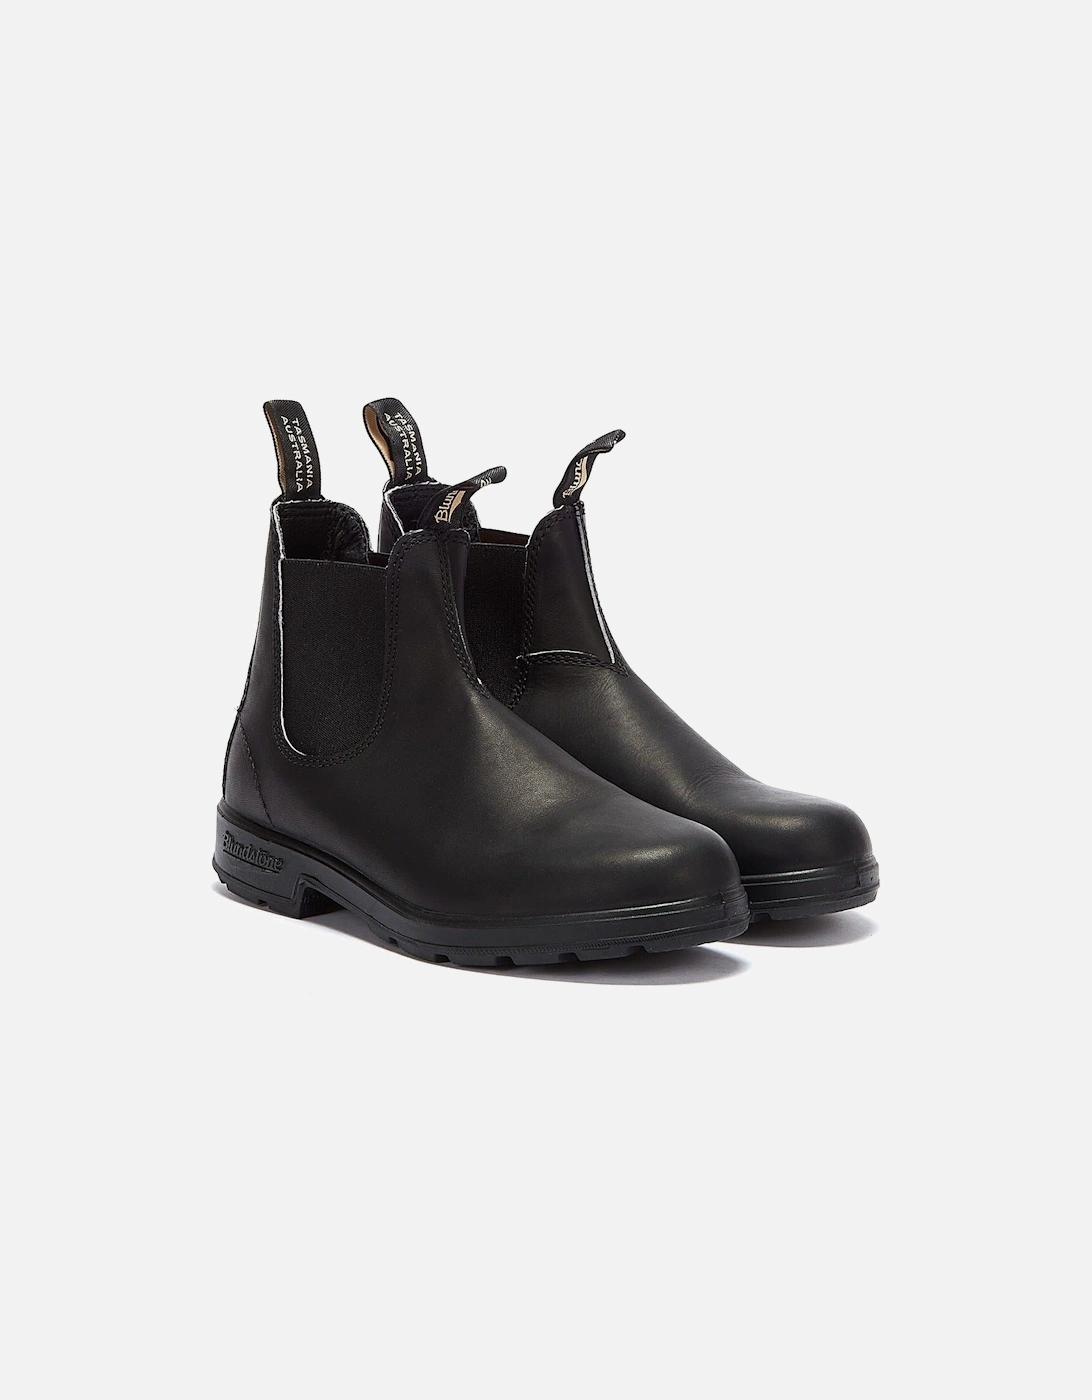 Originals Classic Black Boots, 14 of 13